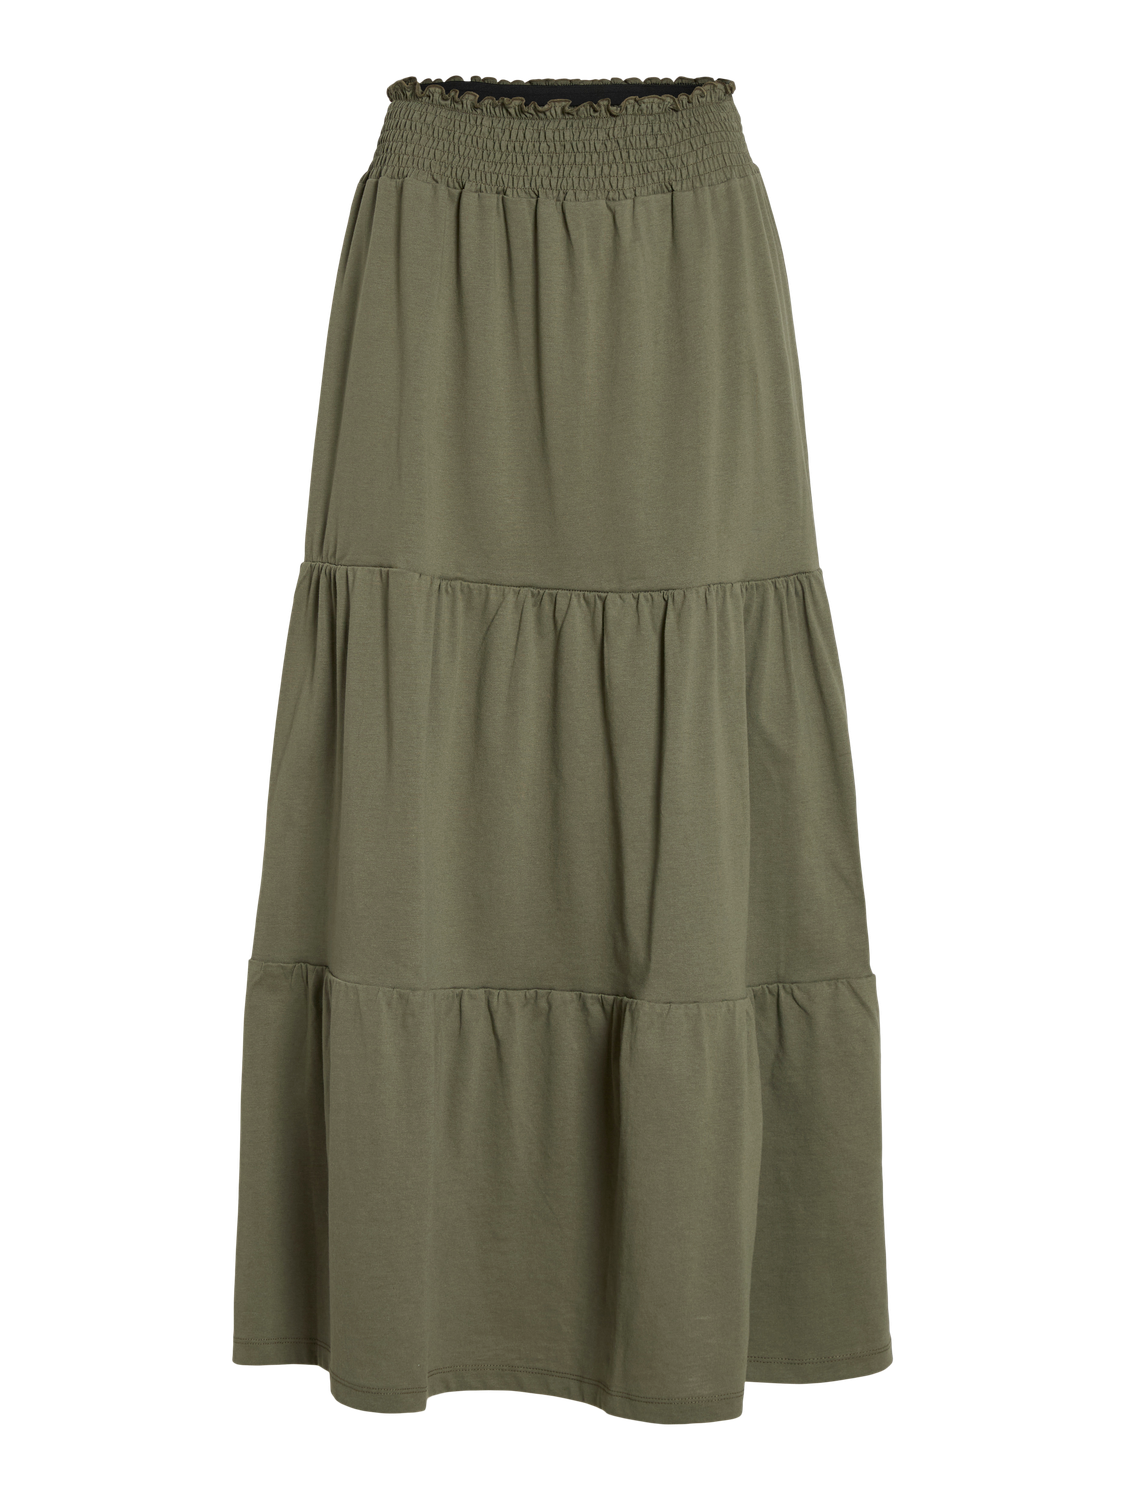 VISUMMER Skirt - Dusty Olive